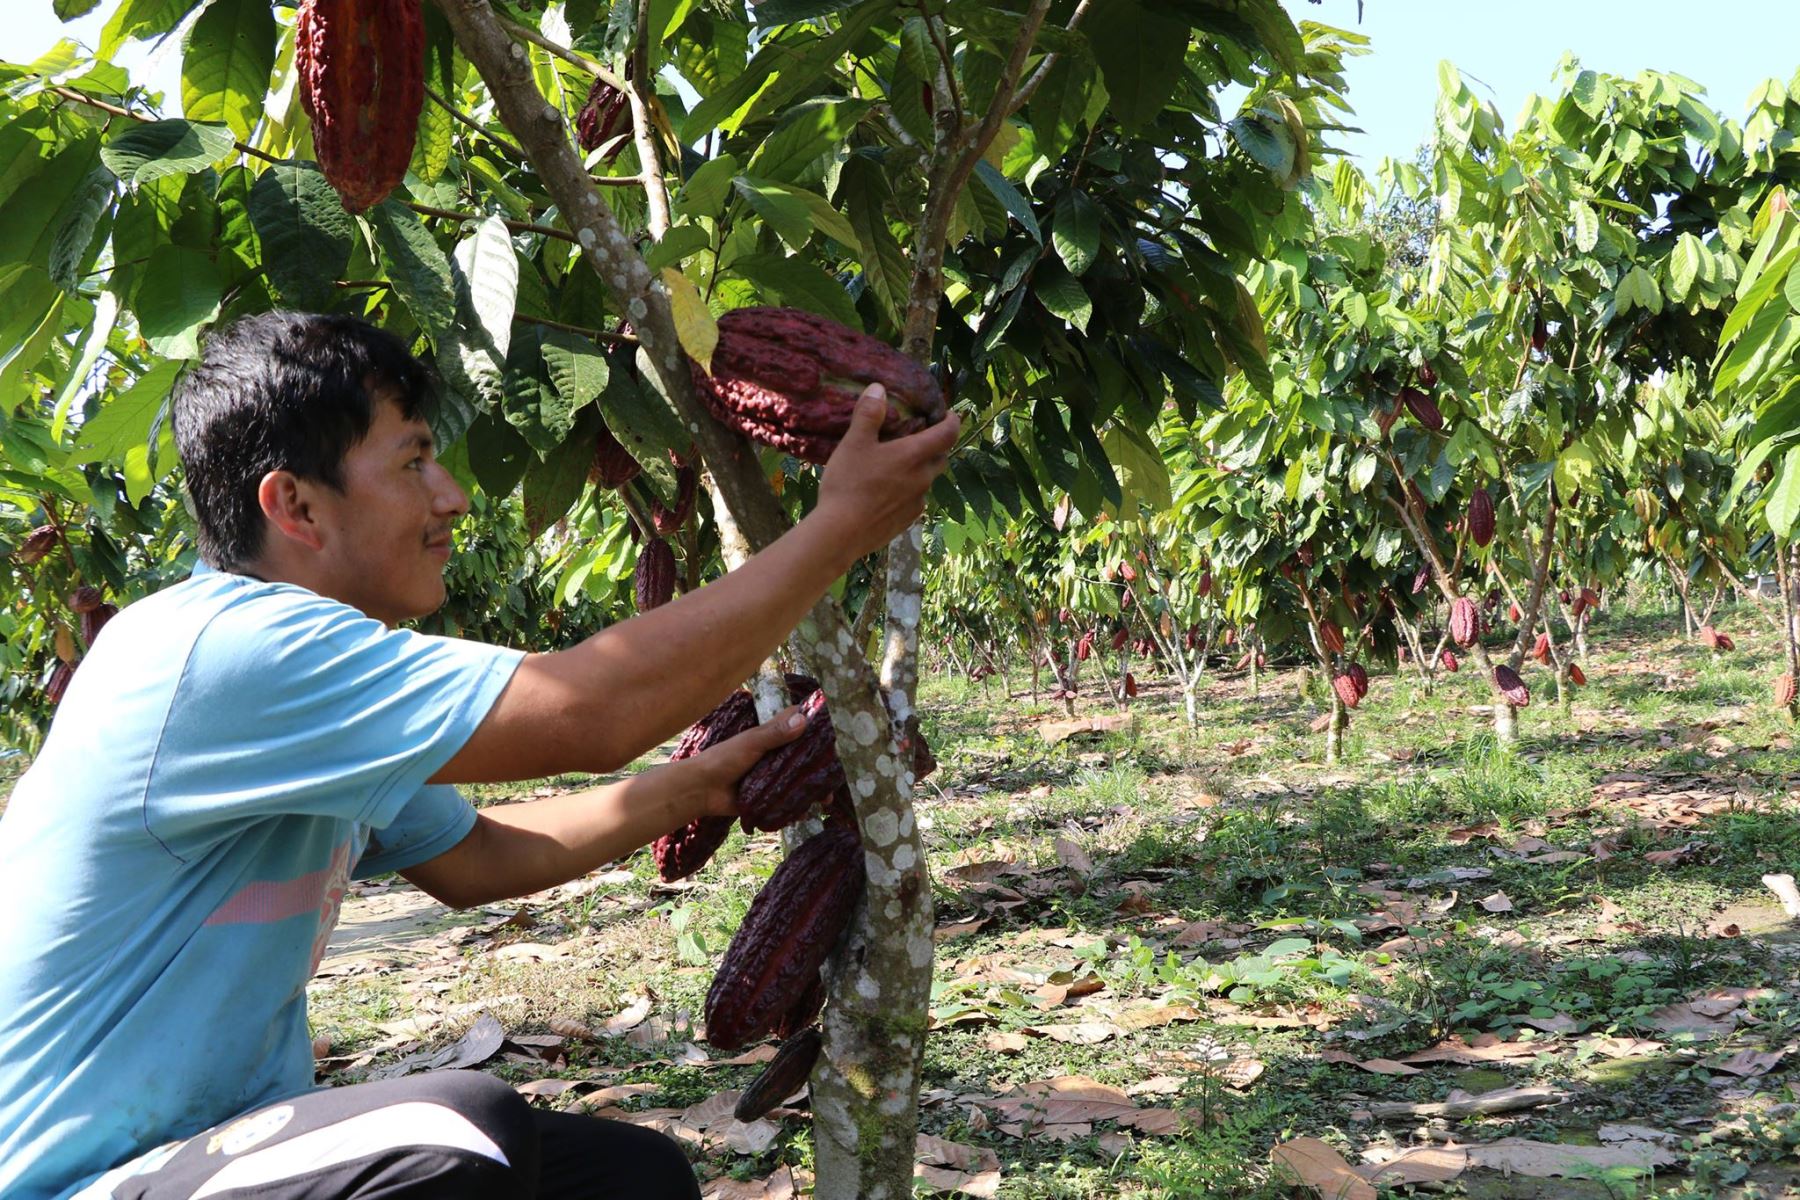 ANDINADevida destina S/ 100,000 para combatir plaga que daña cultivos de cacao en Huánuco. ANDINA